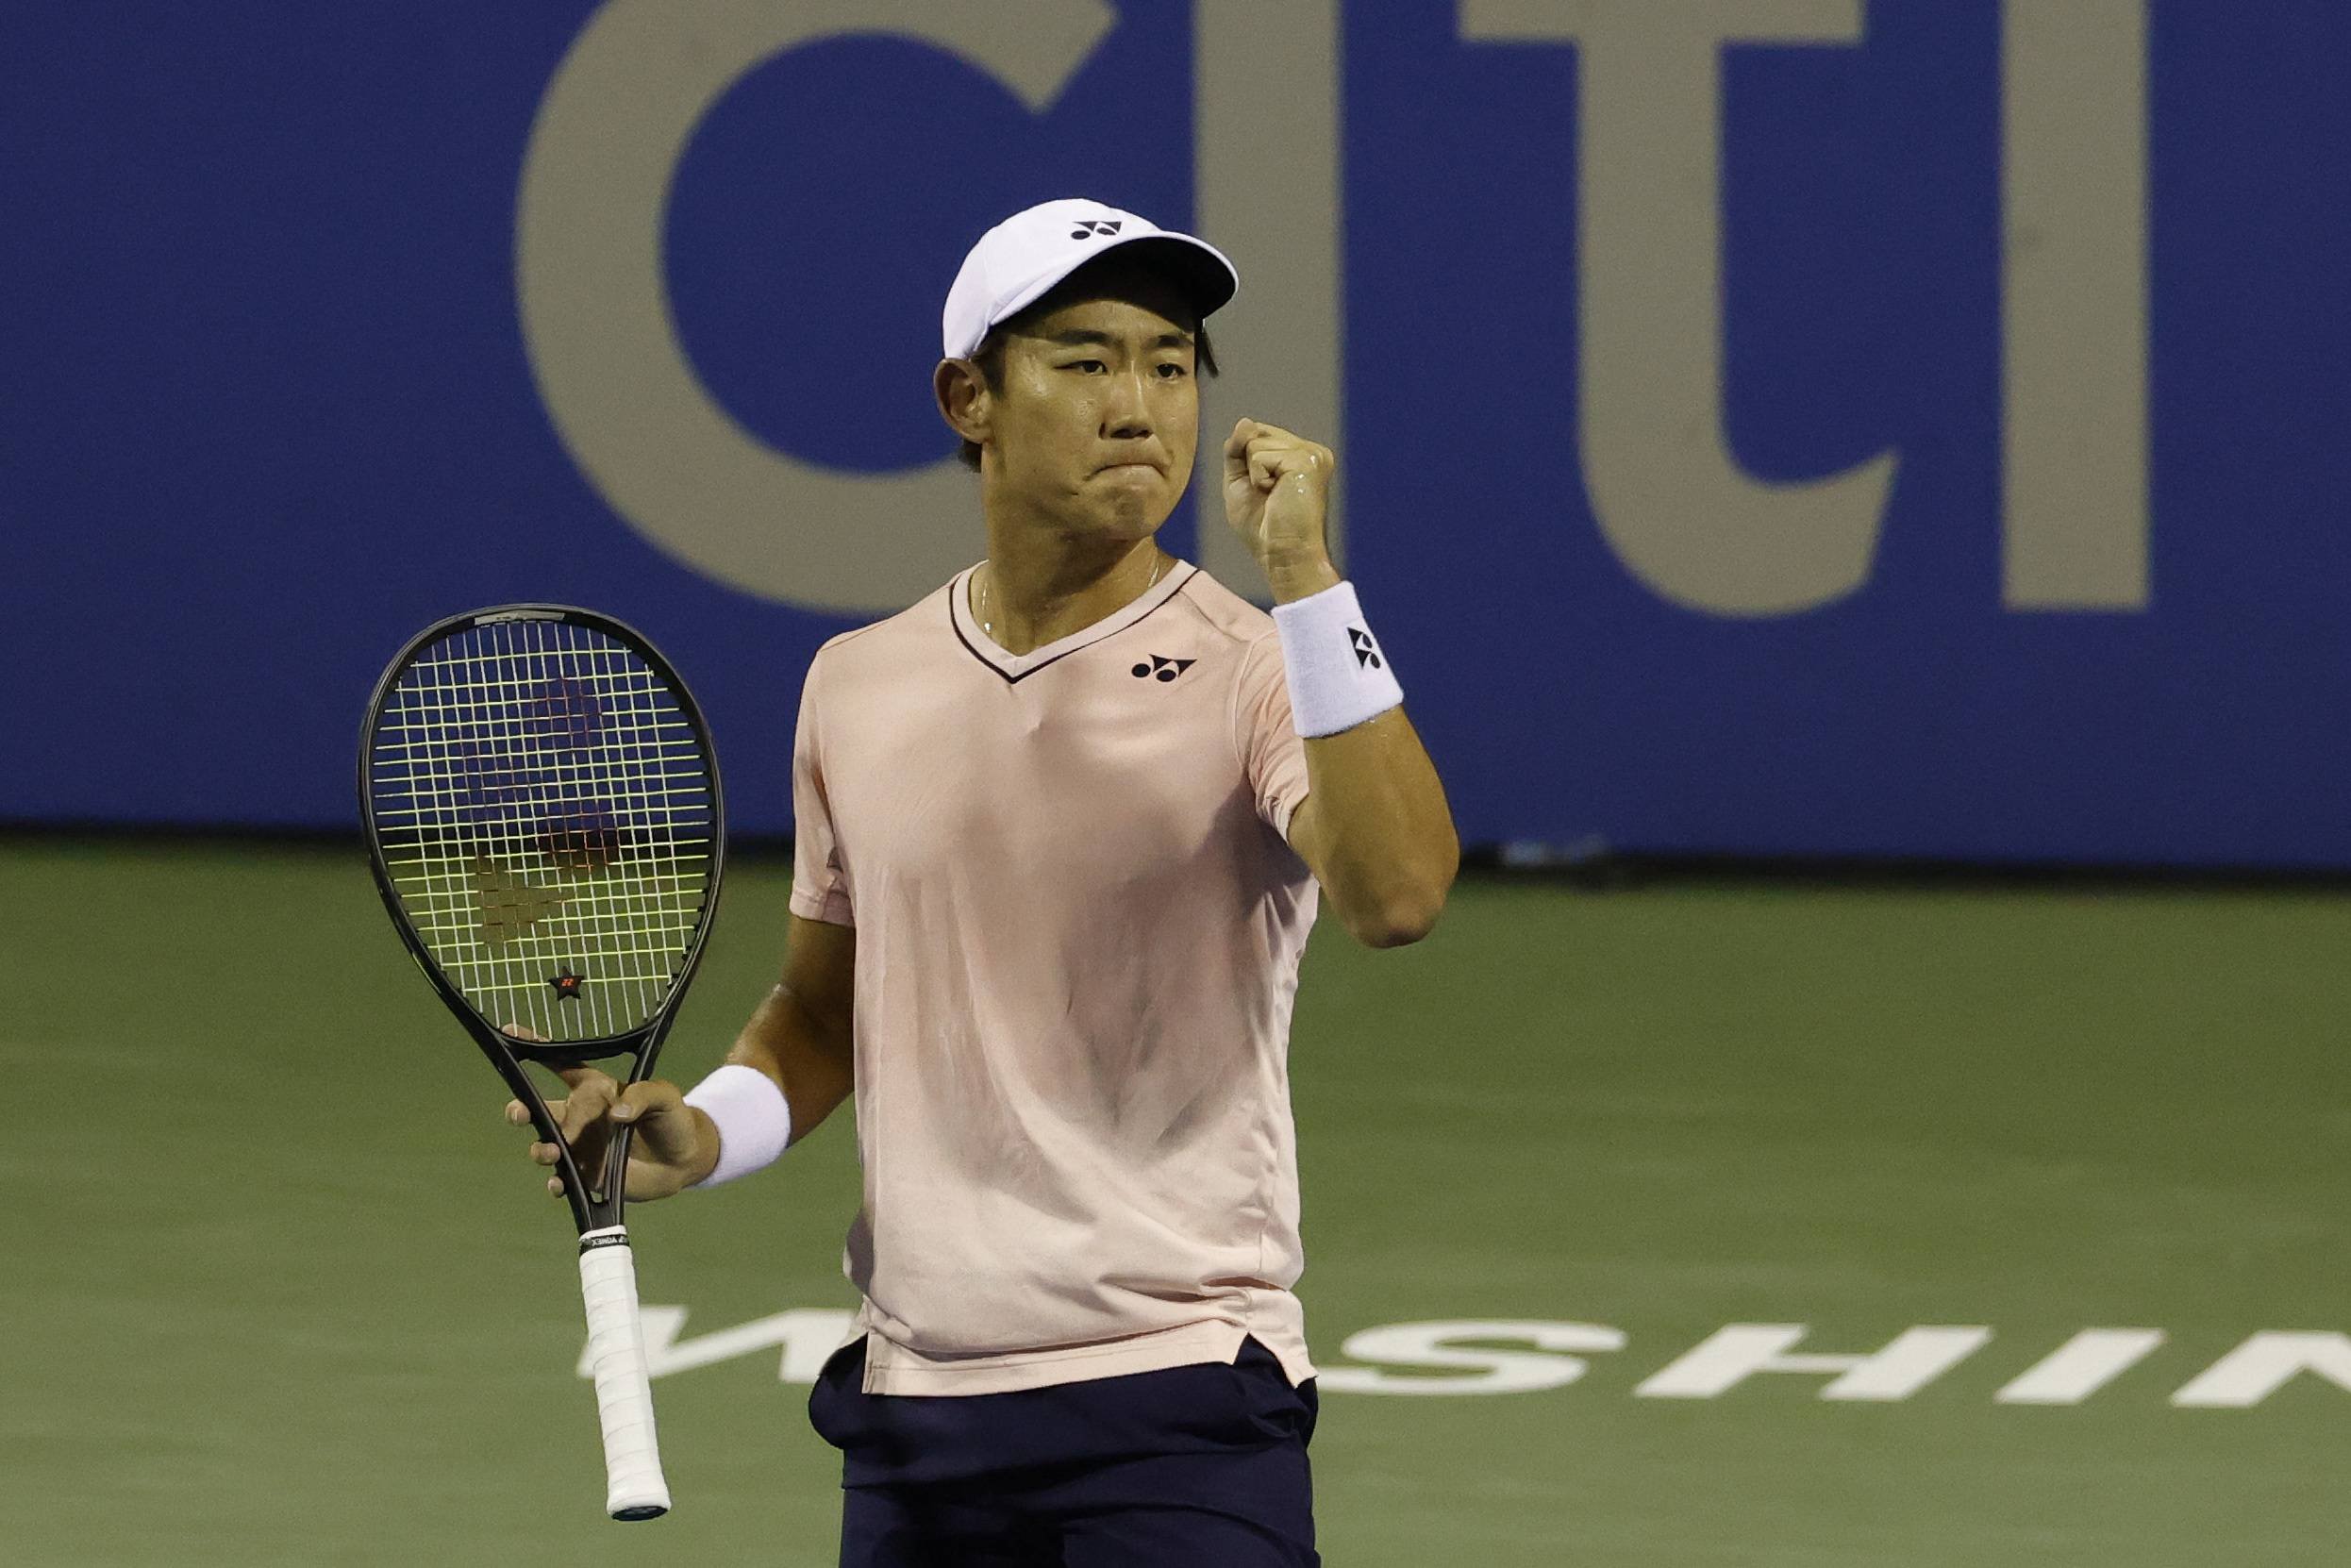  Japonezul Yoshihito Nishioka a câştigat turneul de la Seul. Este al doilea titlu ATP din carieră